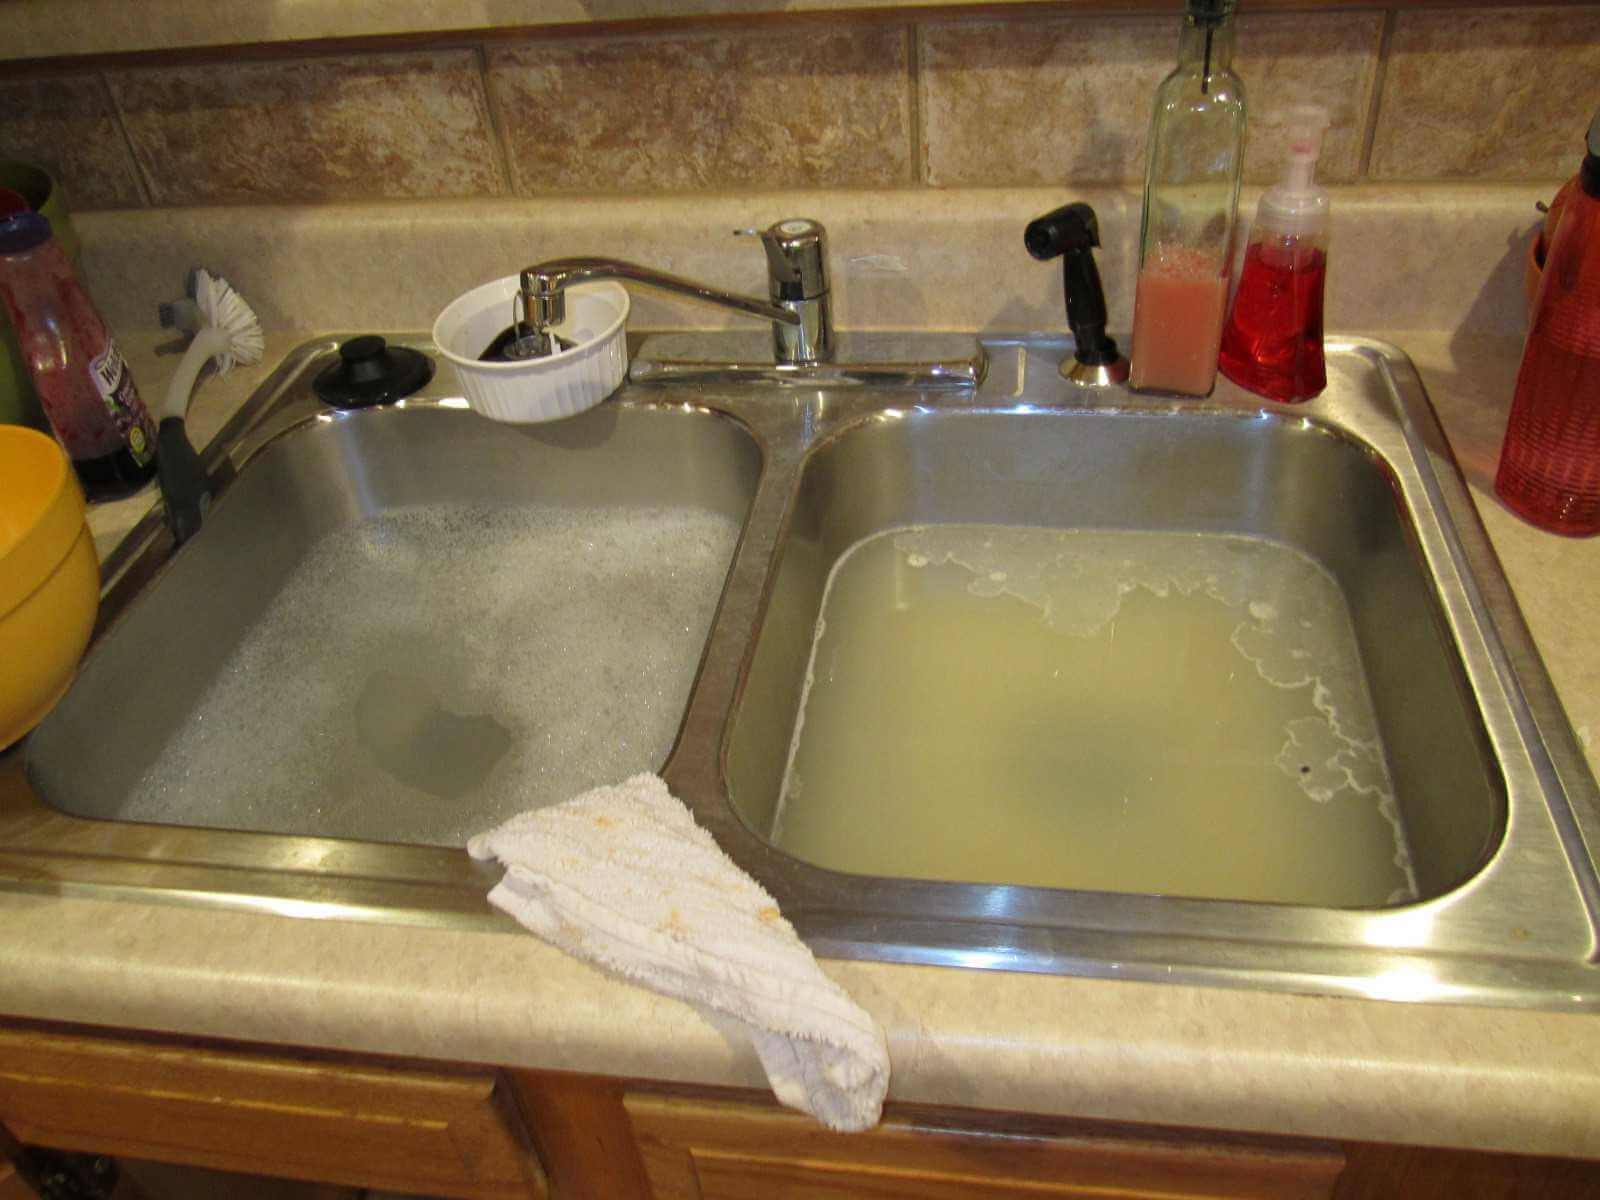 Why The Kitchen Sink Won't Drain